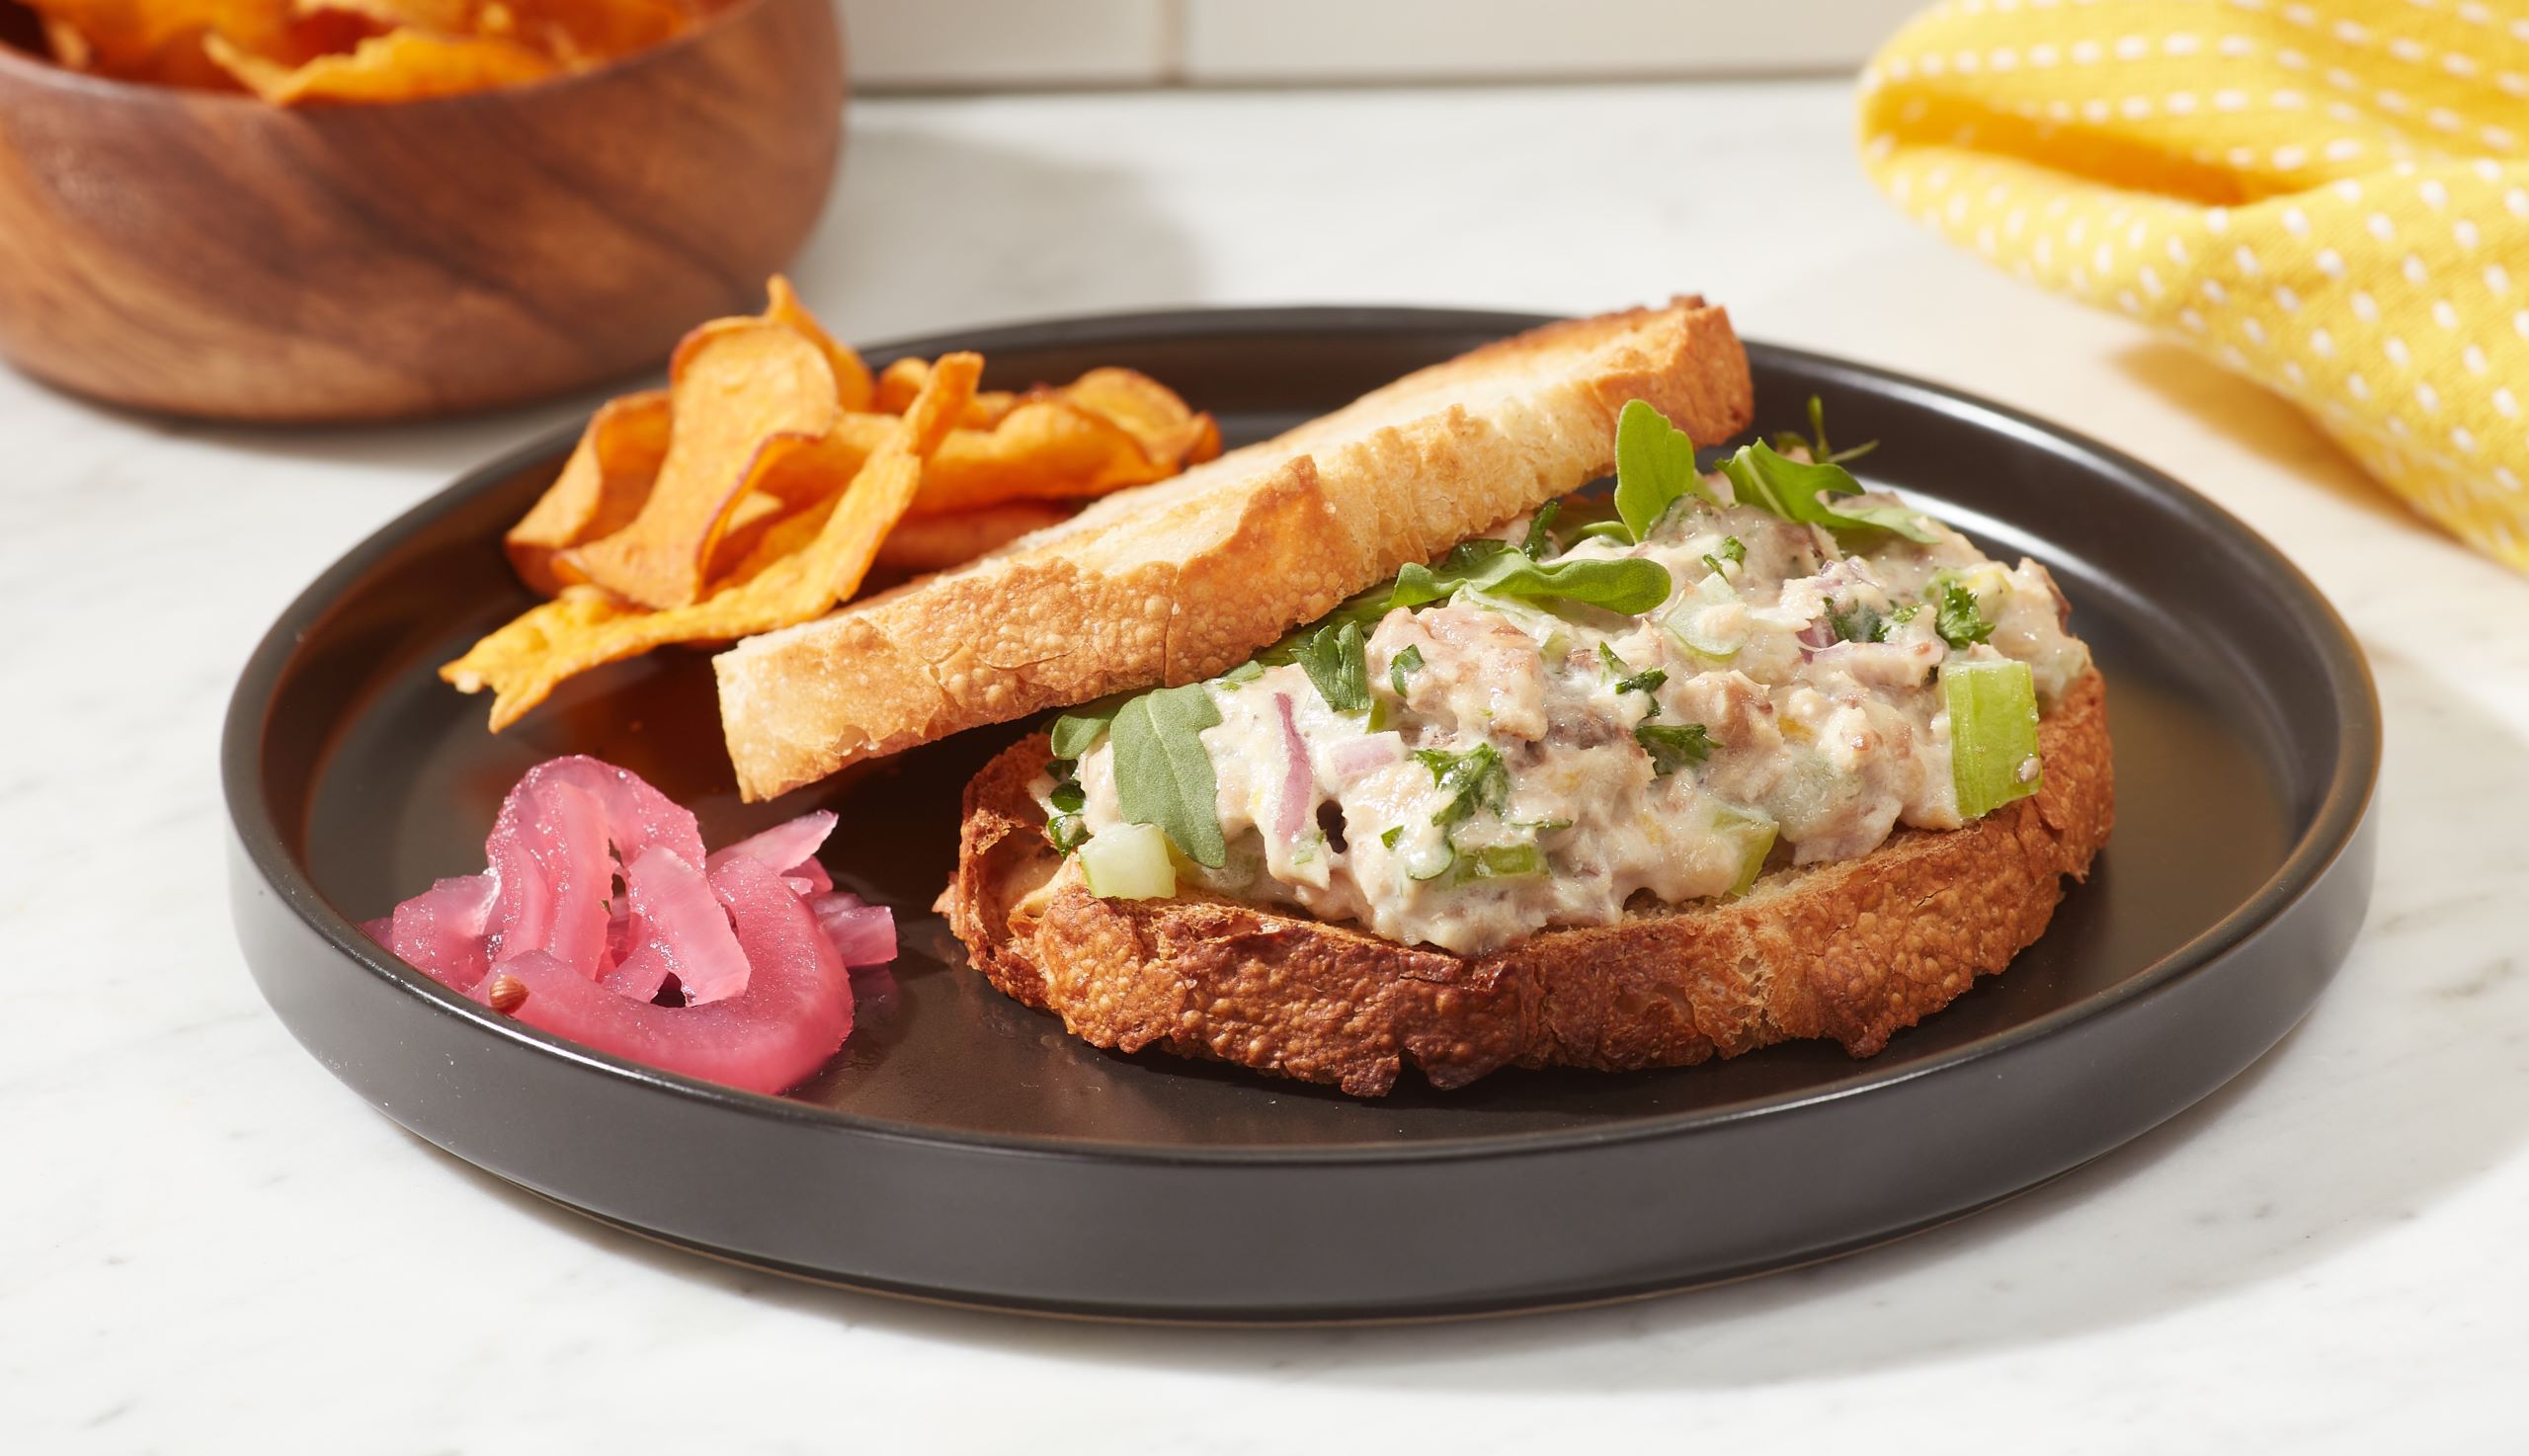 sardine salad sandwich